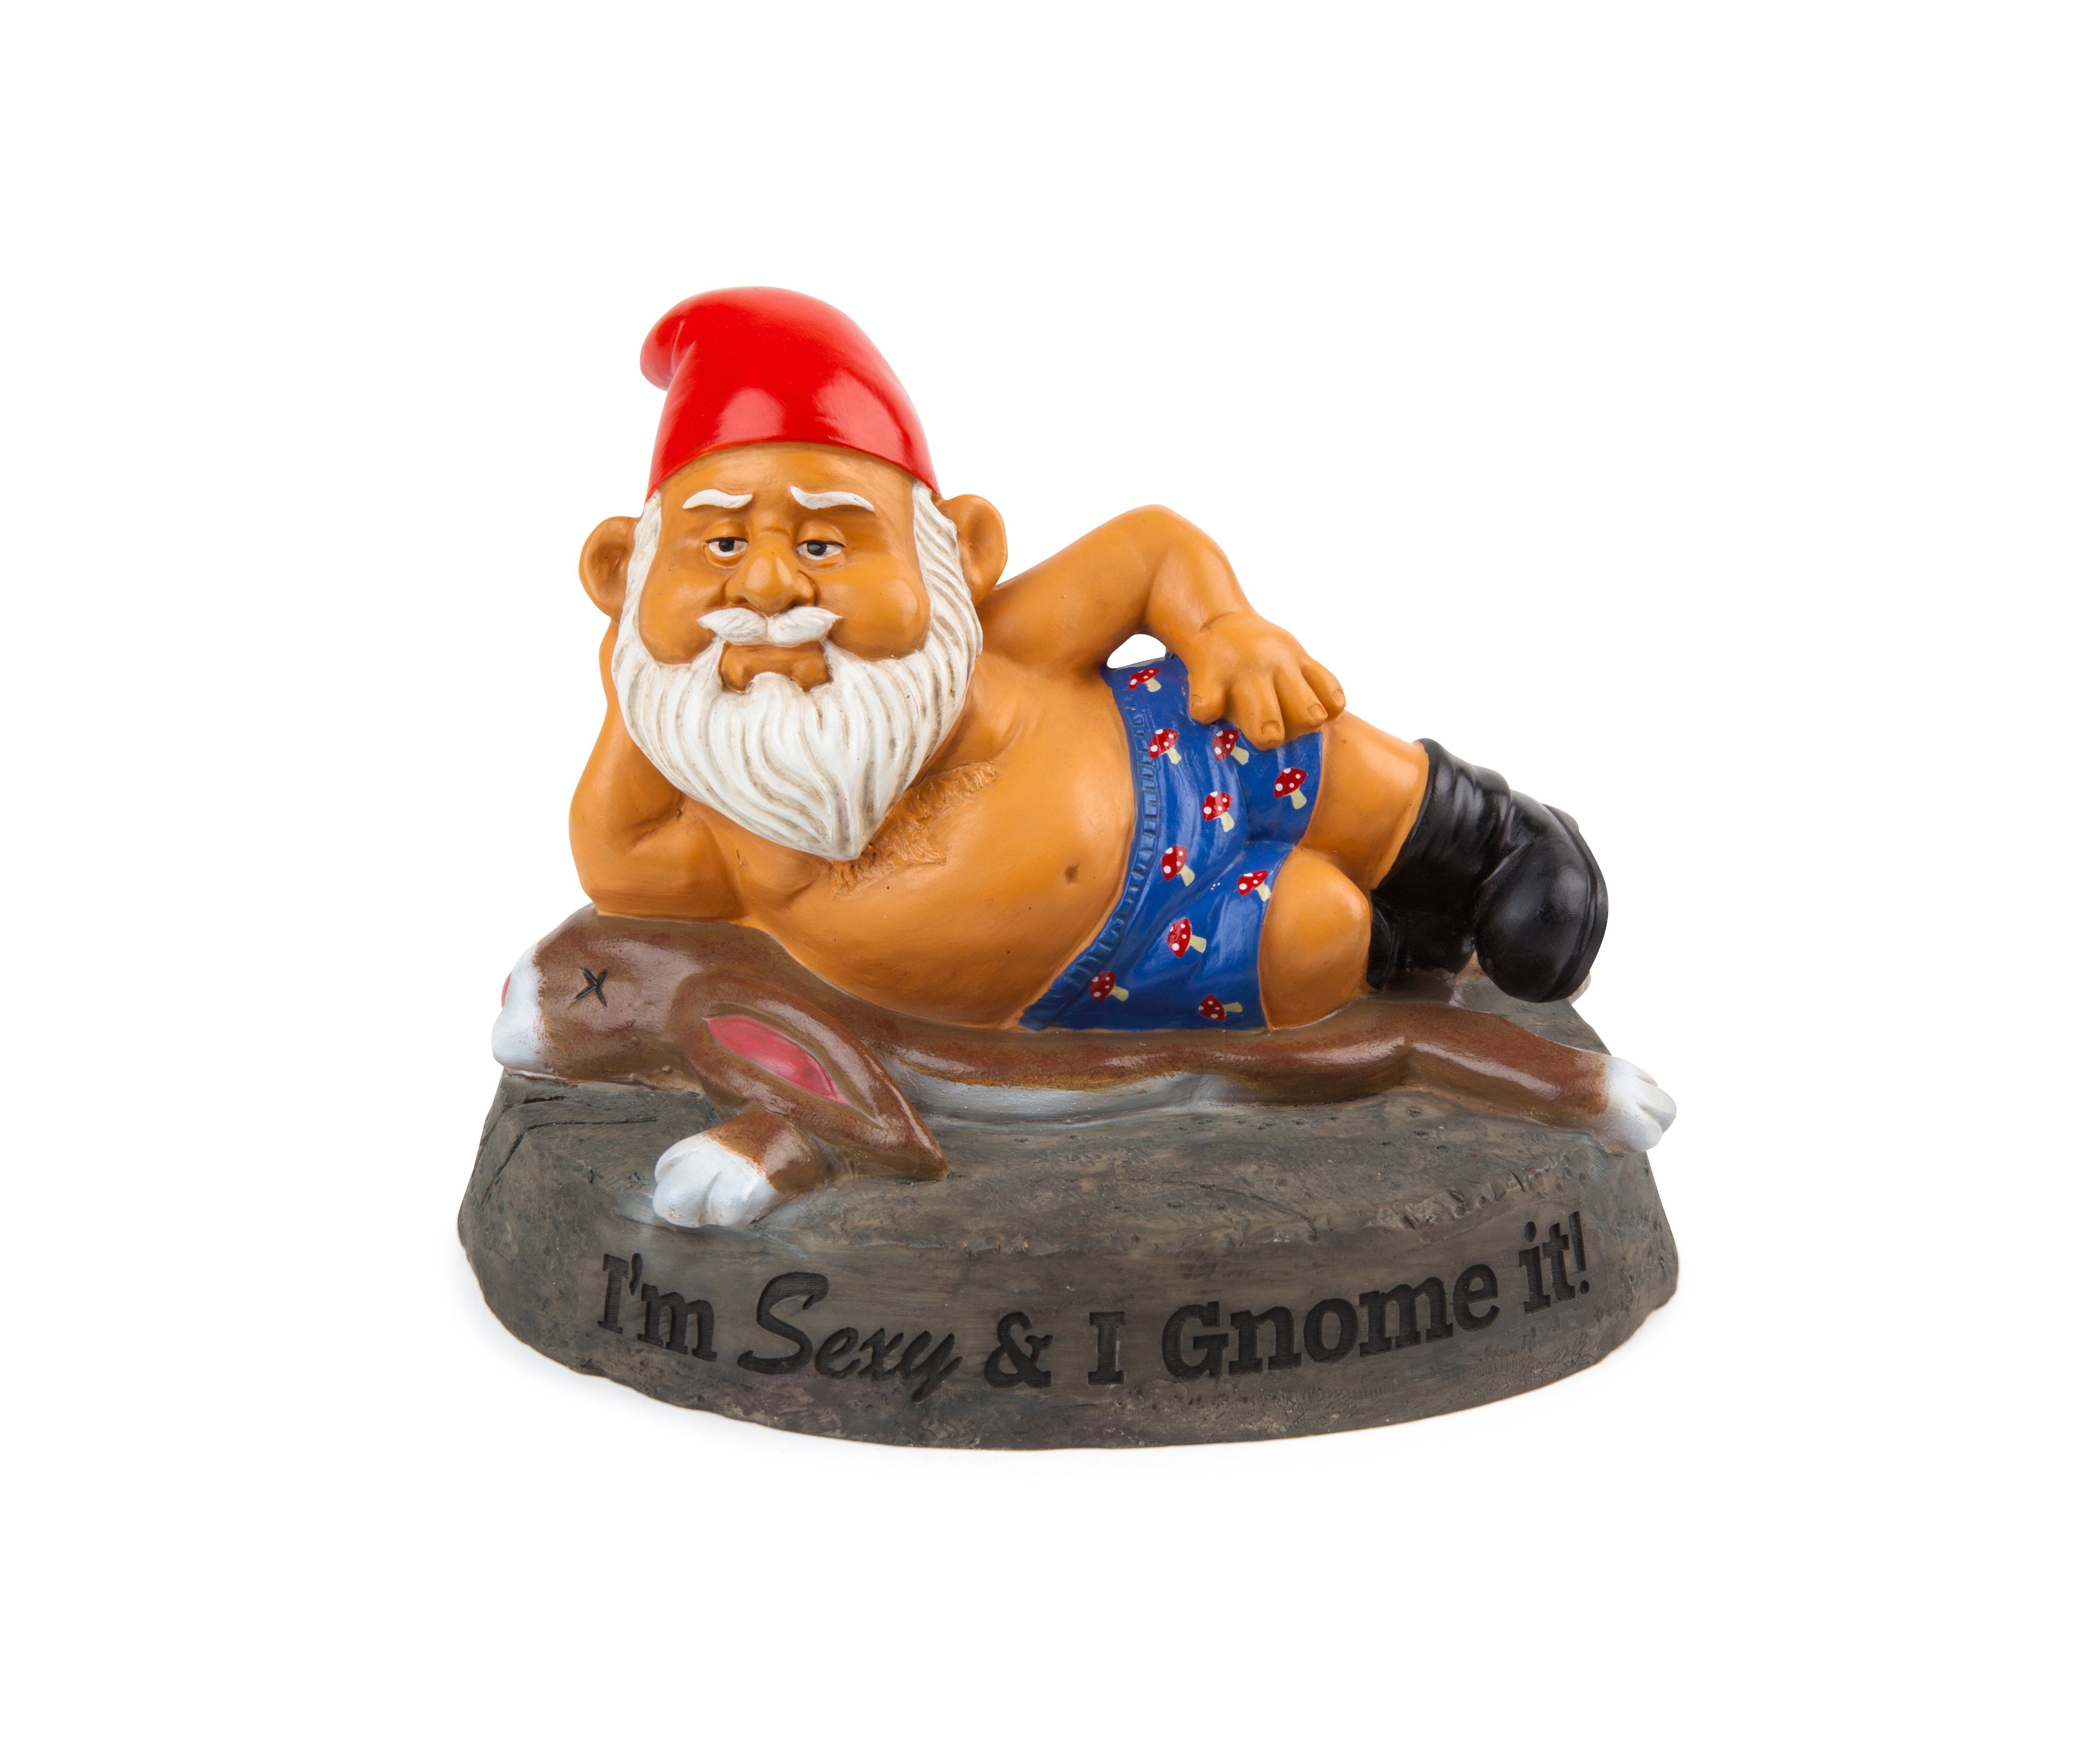 The-Sexy-&-I-Gnome-It-Garden-Gnome